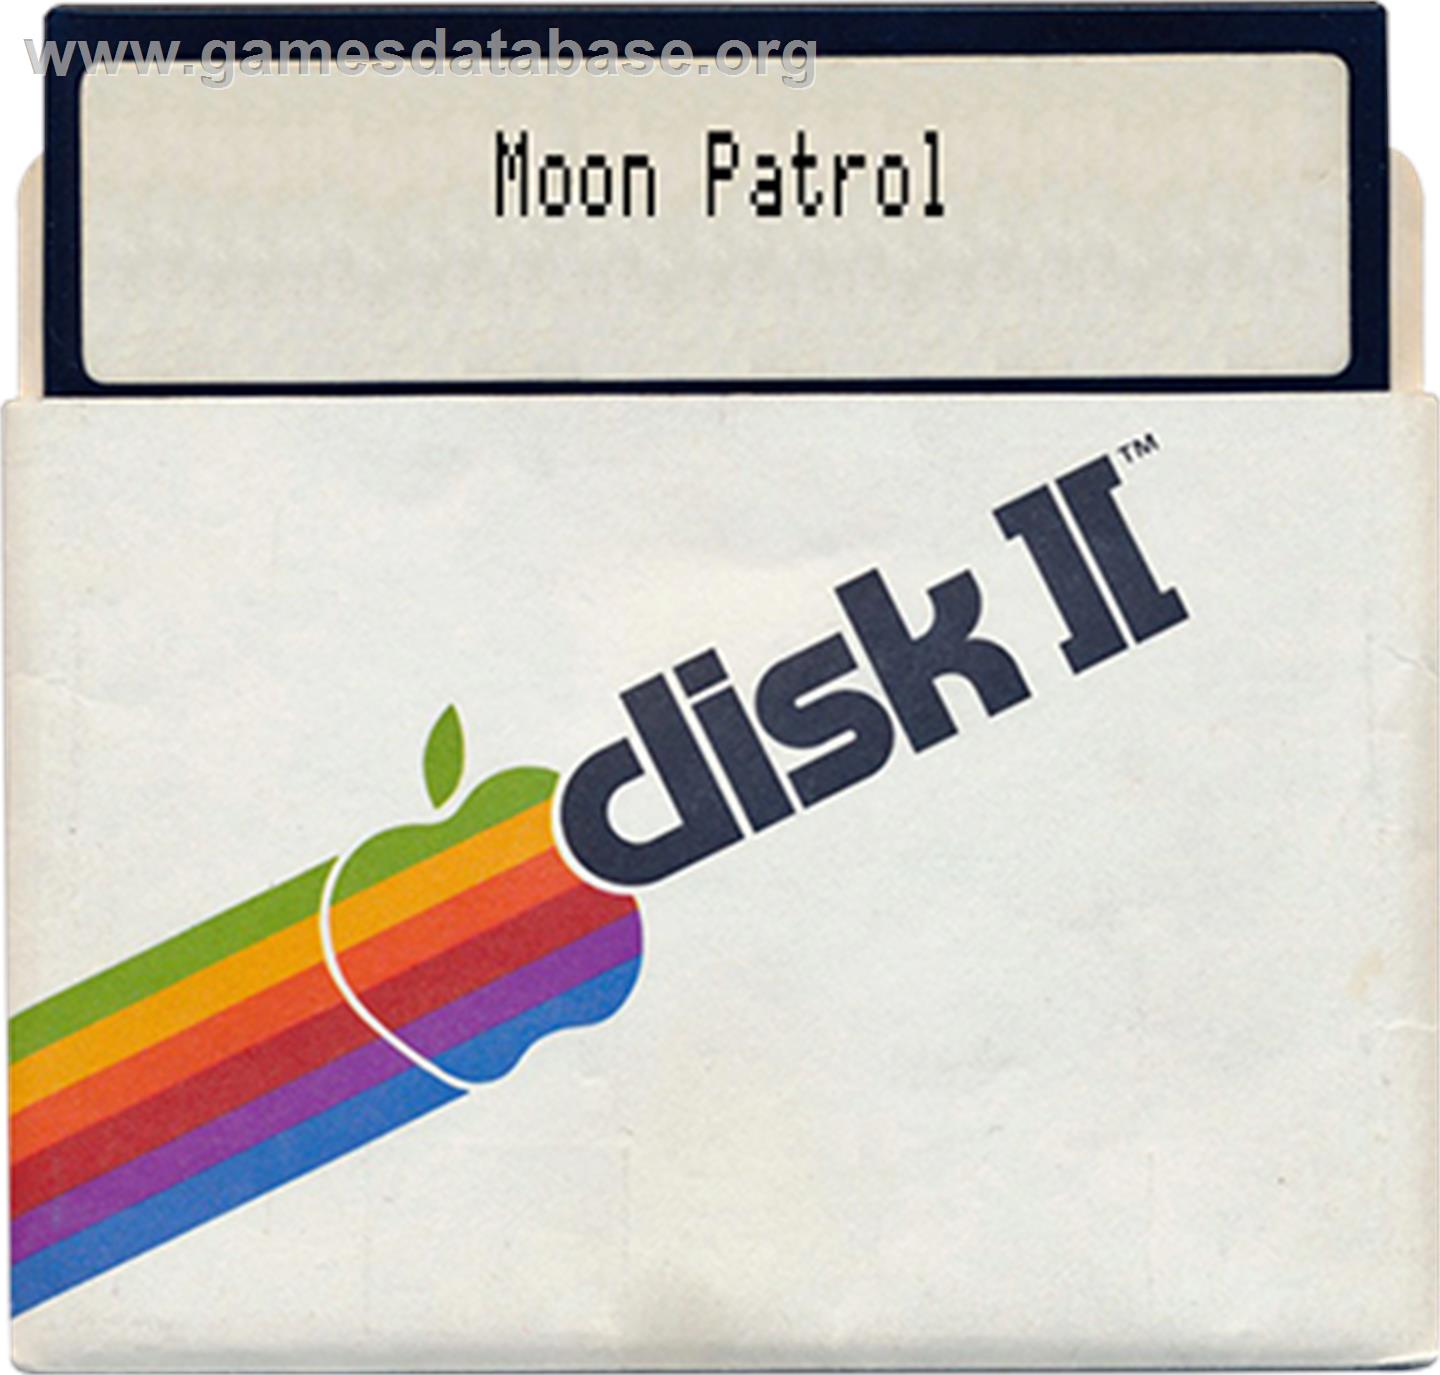 Moon Patrol - Apple II - Artwork - Disc